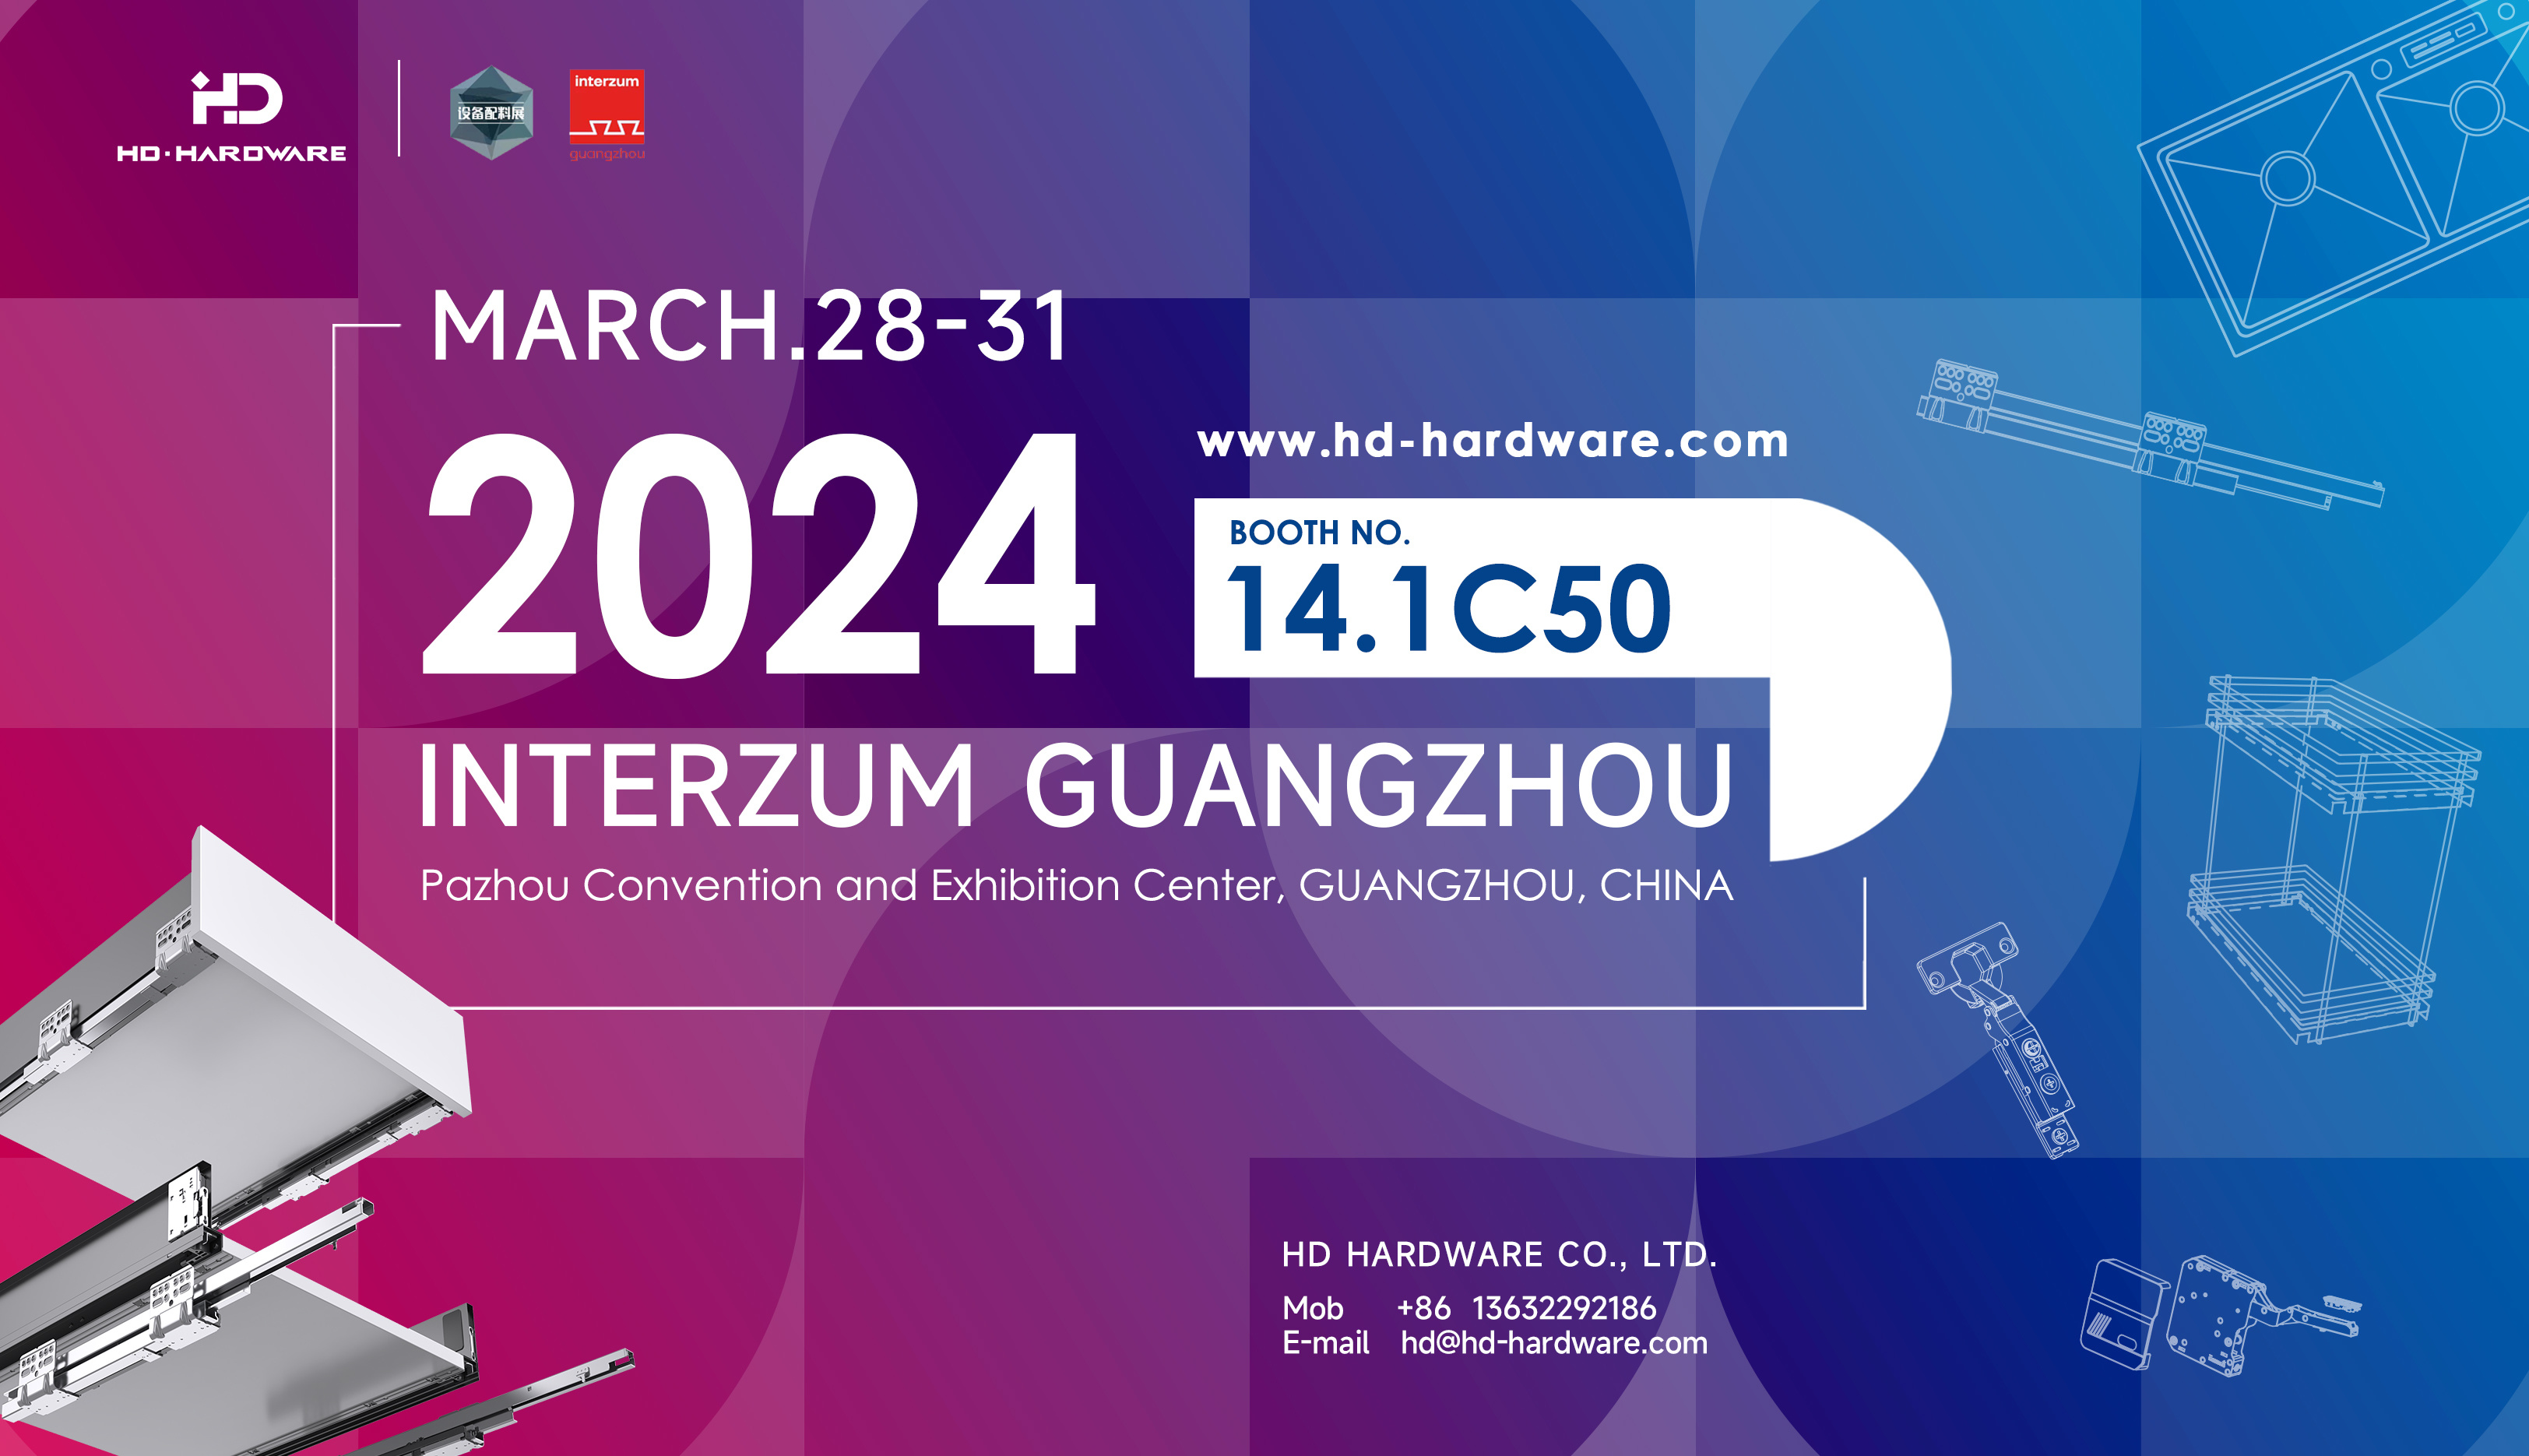 INTERZUM GUANGZHOU INVITATION 2024